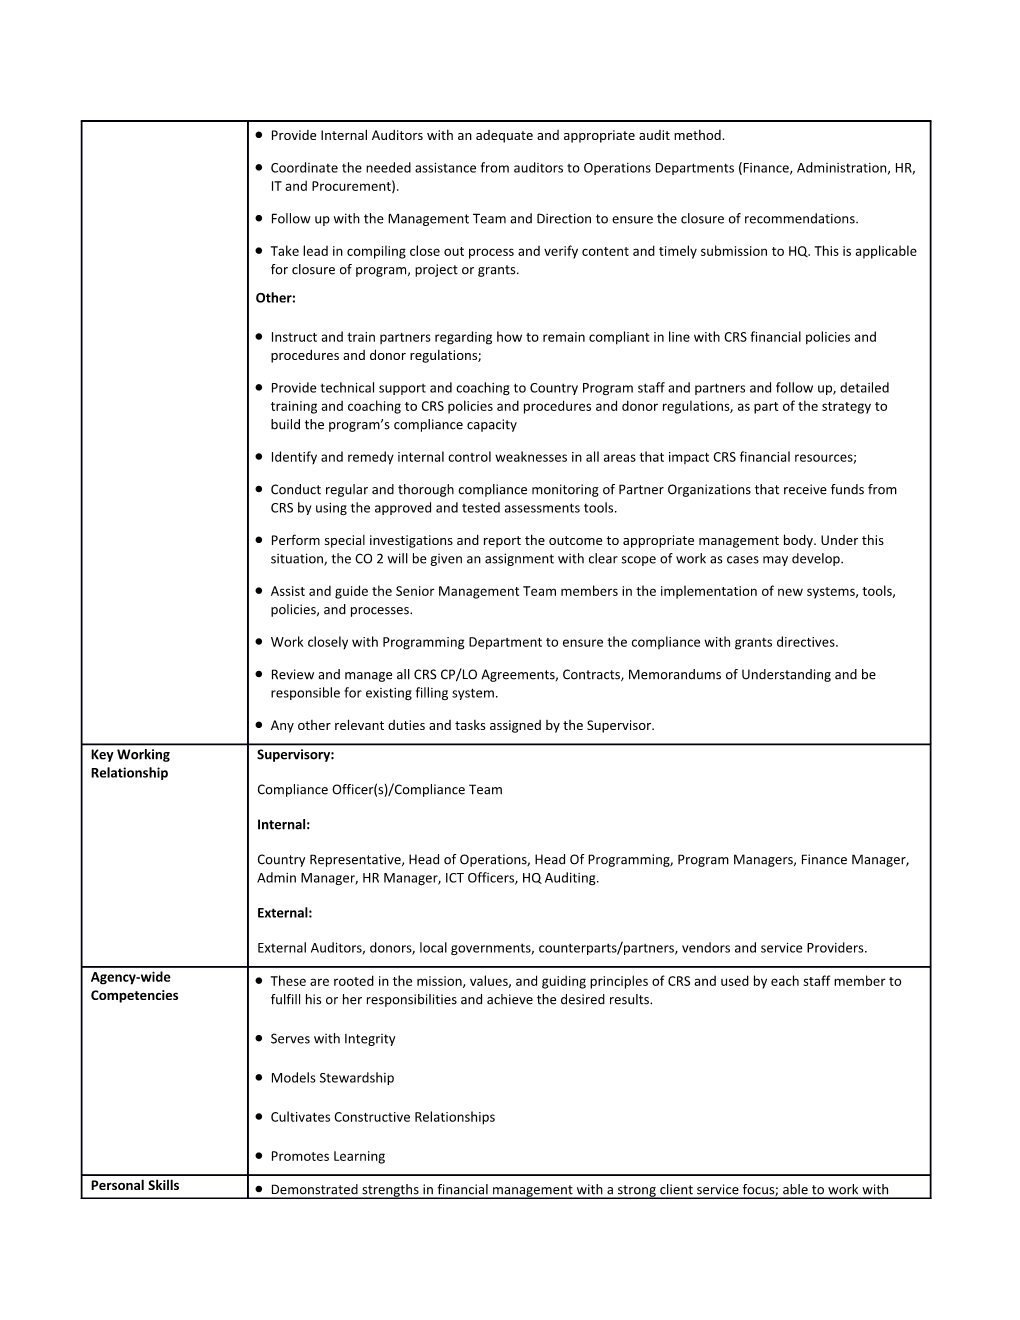 Senior Compliance Officer Job Description Template (Jdt)